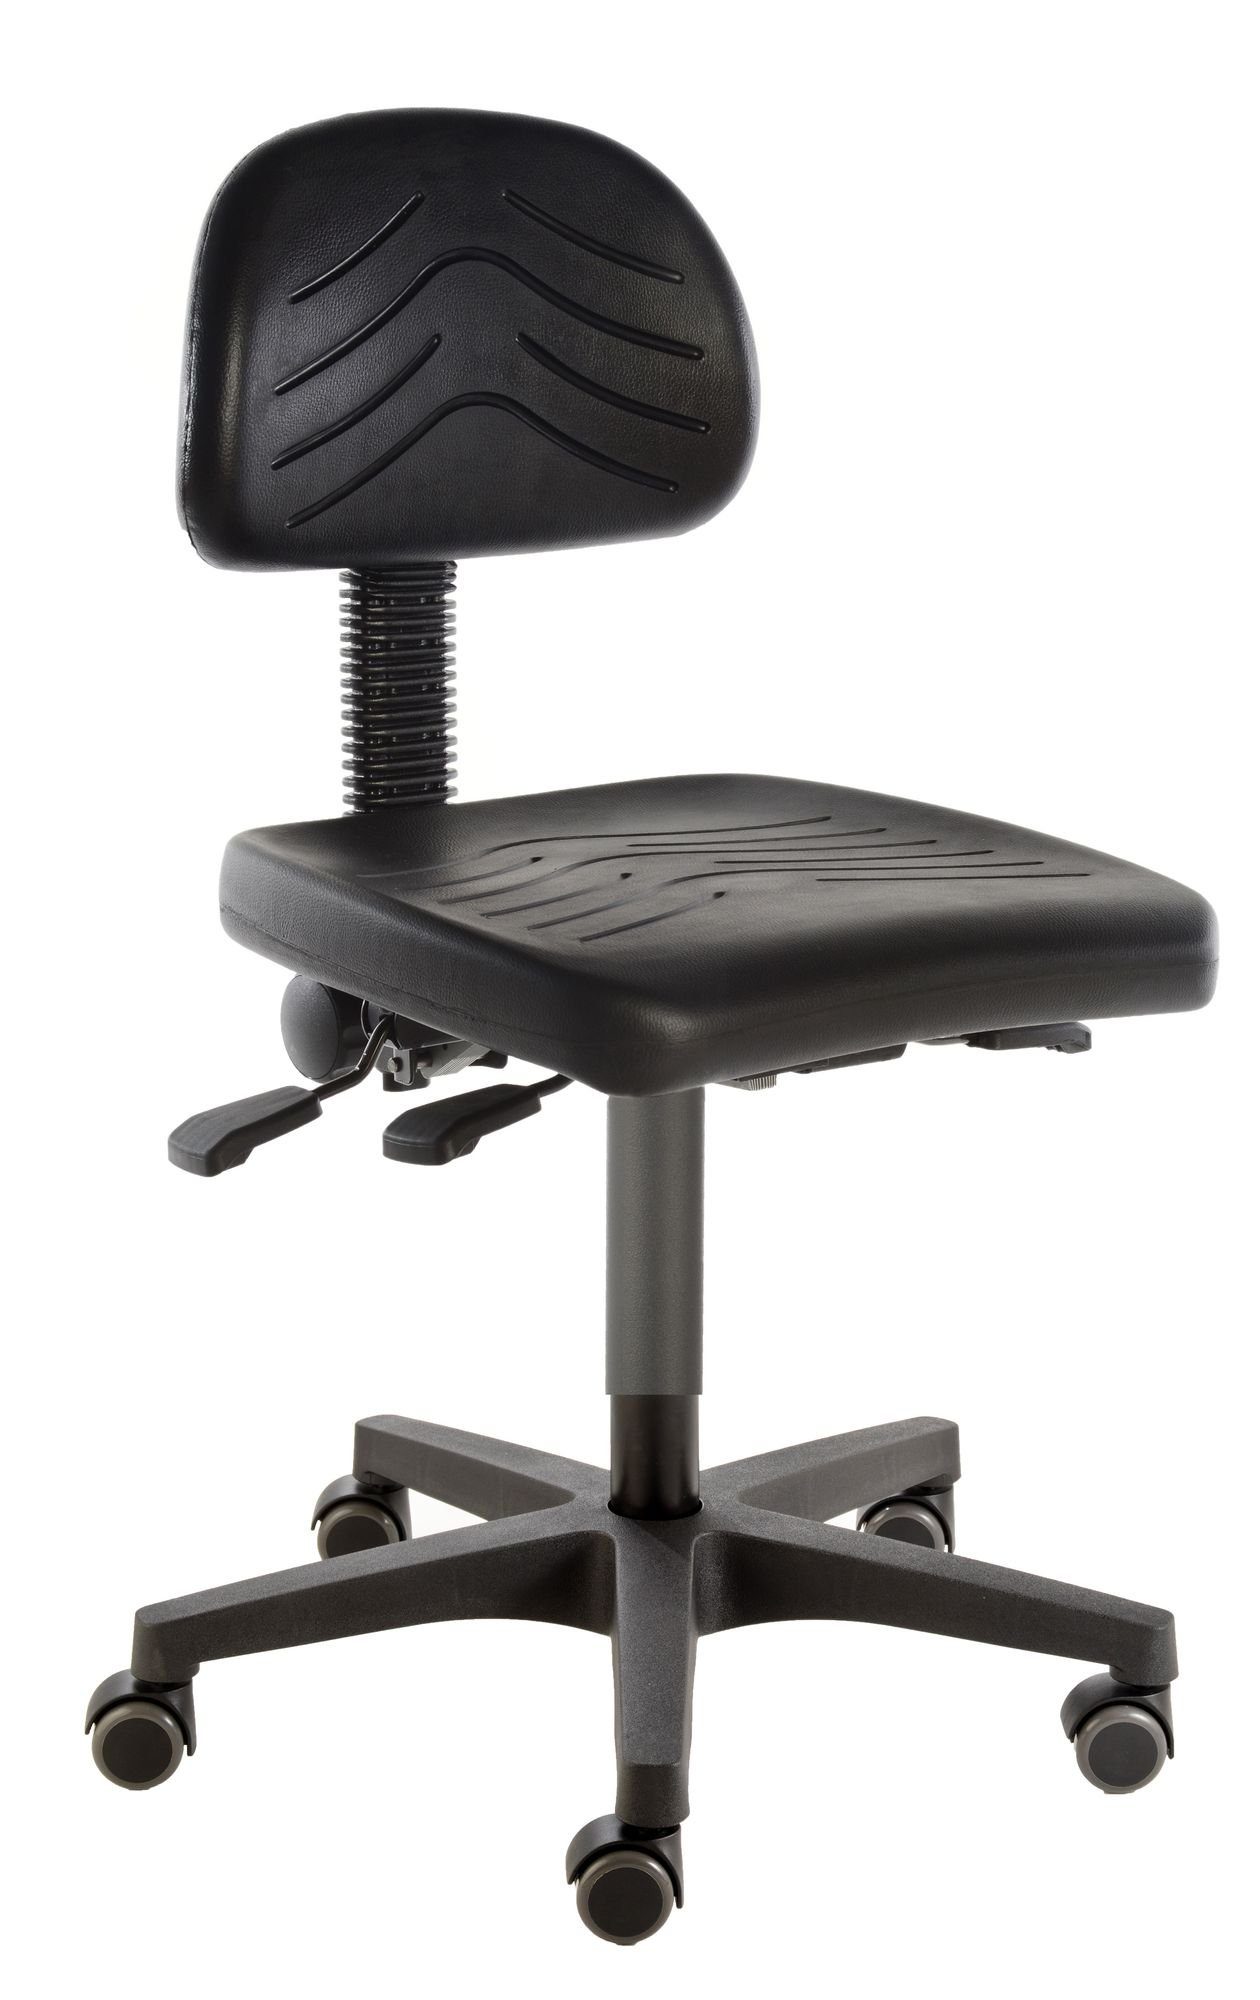 Prova Nova Arbeitshocker Arbeitsstuhl poppi® cerdo basic 8430 mit robustem PU-Sitz und Lehne, Sitzhöhe 45 - 65 cm, Rollen